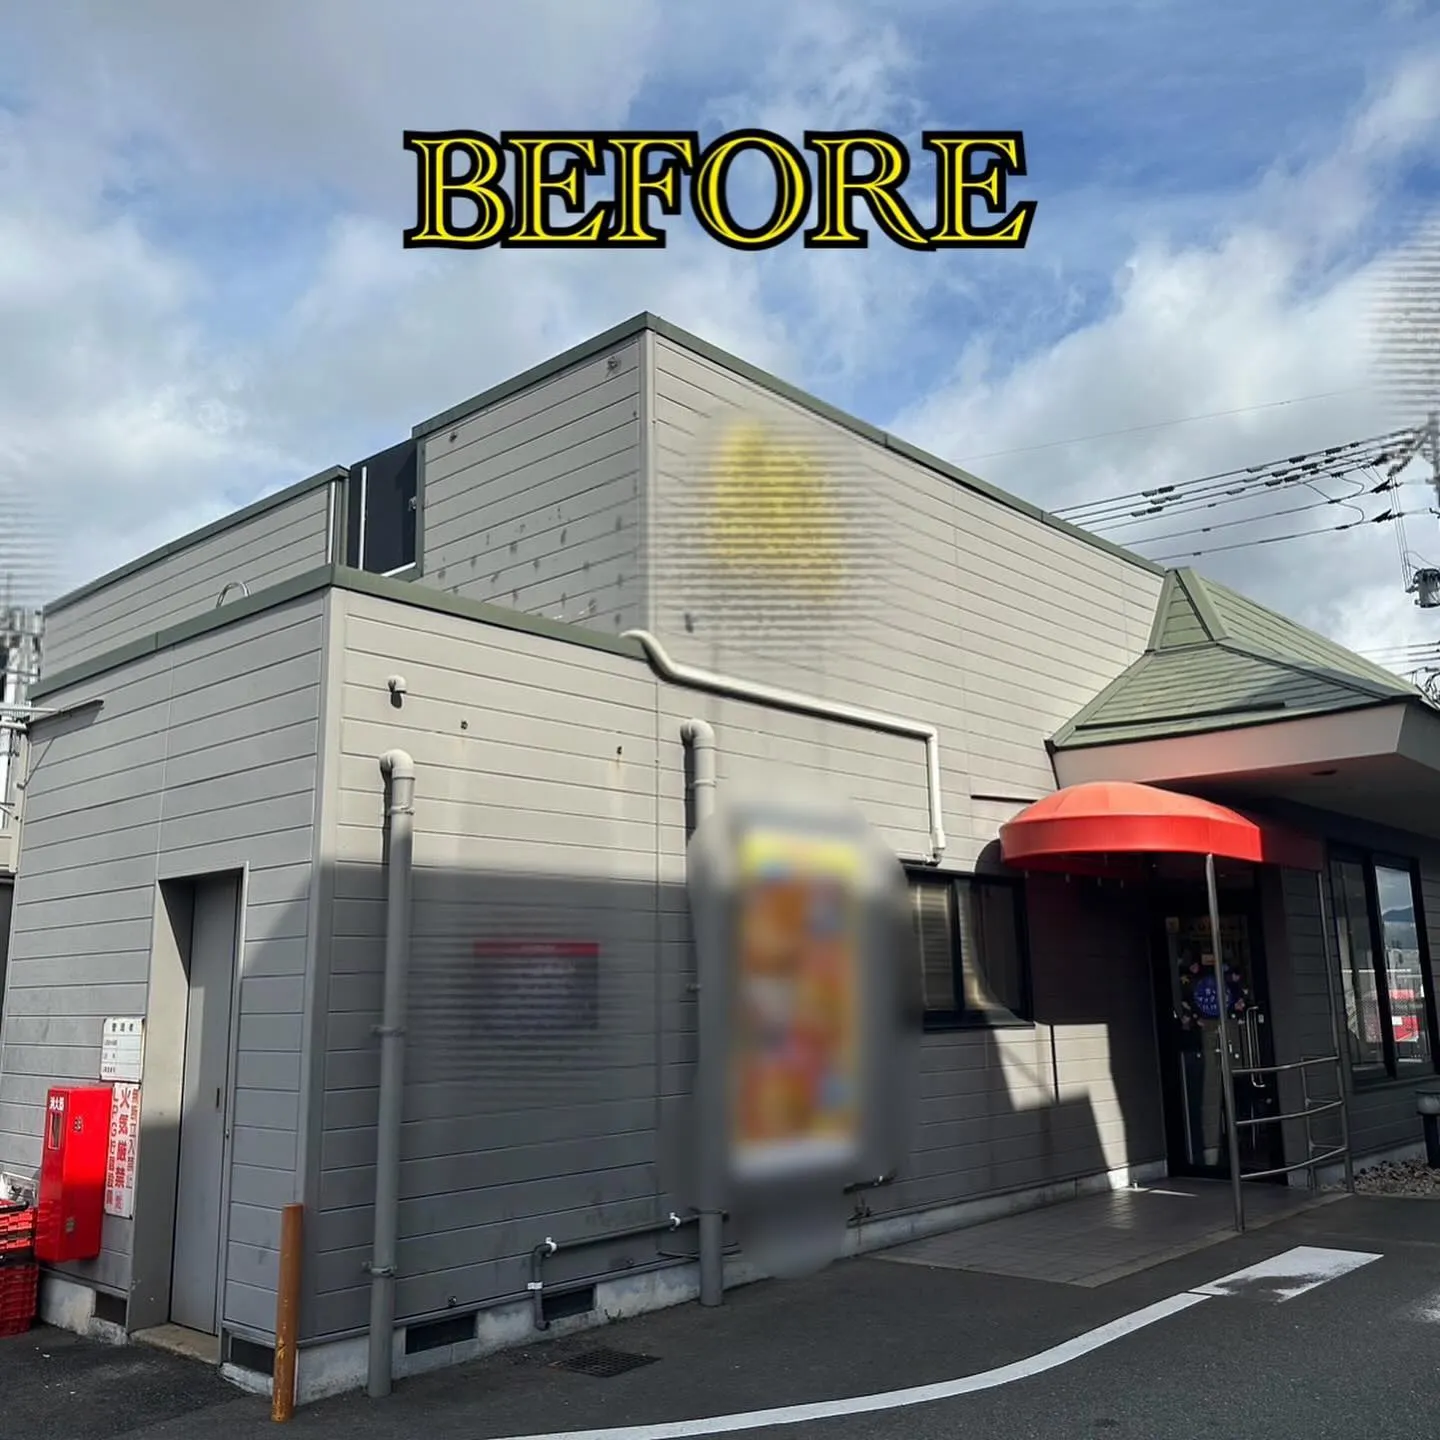 某ファーストフード店舗福岡空港付近の屋根外壁塗装工事のビフォ...